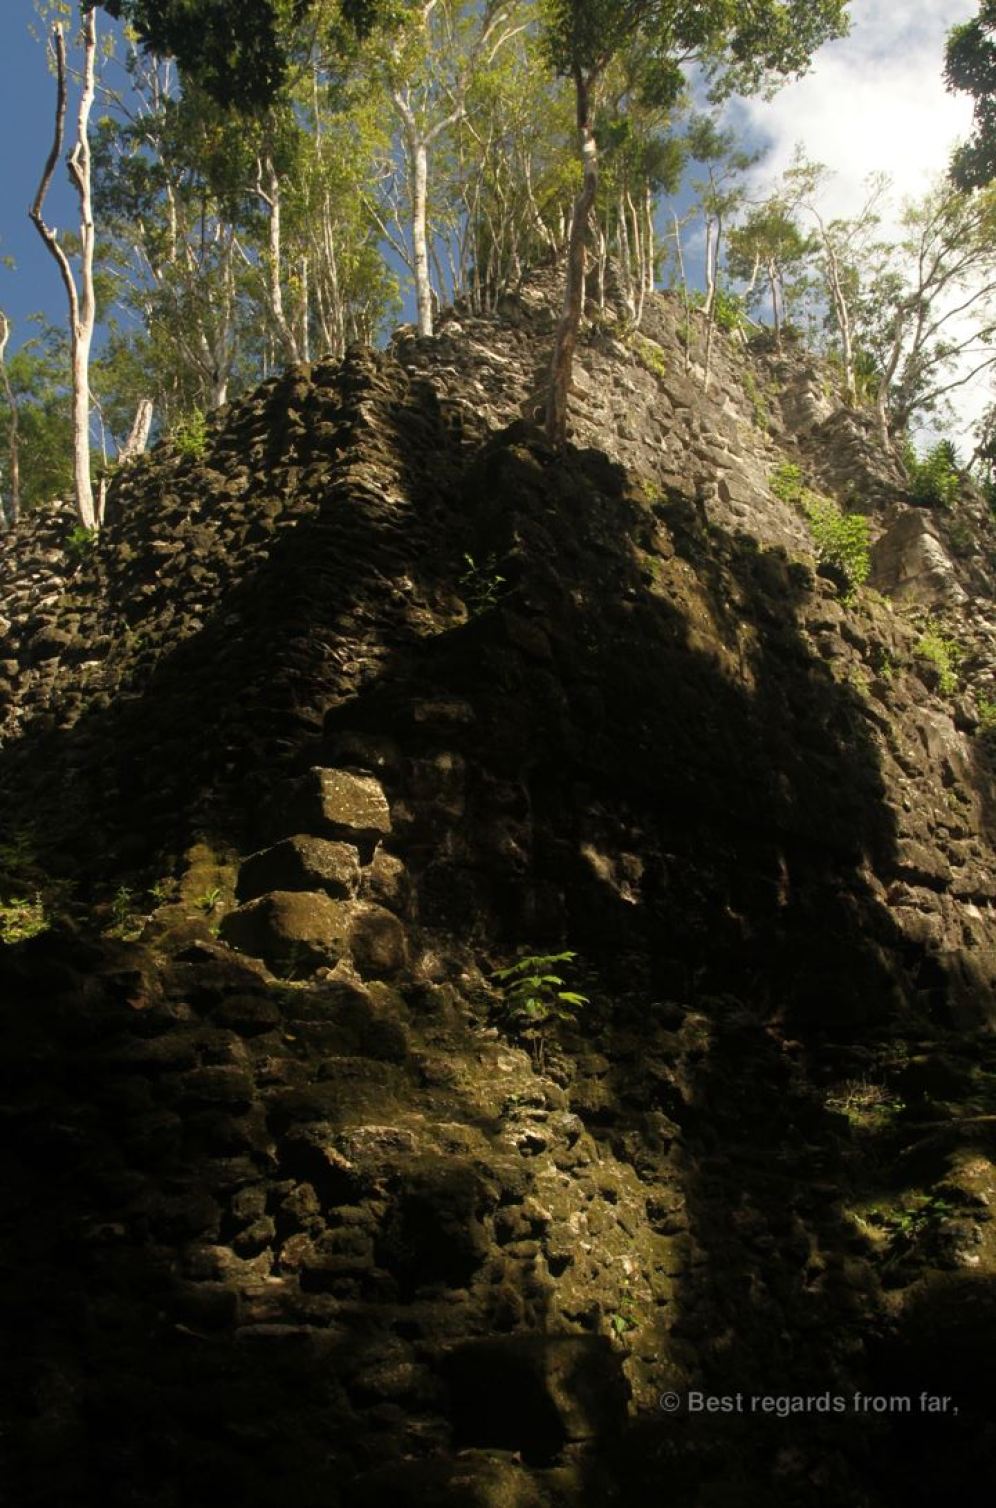 The top structure of the massive pyramid of La Danta, El Mirador, Guatemala